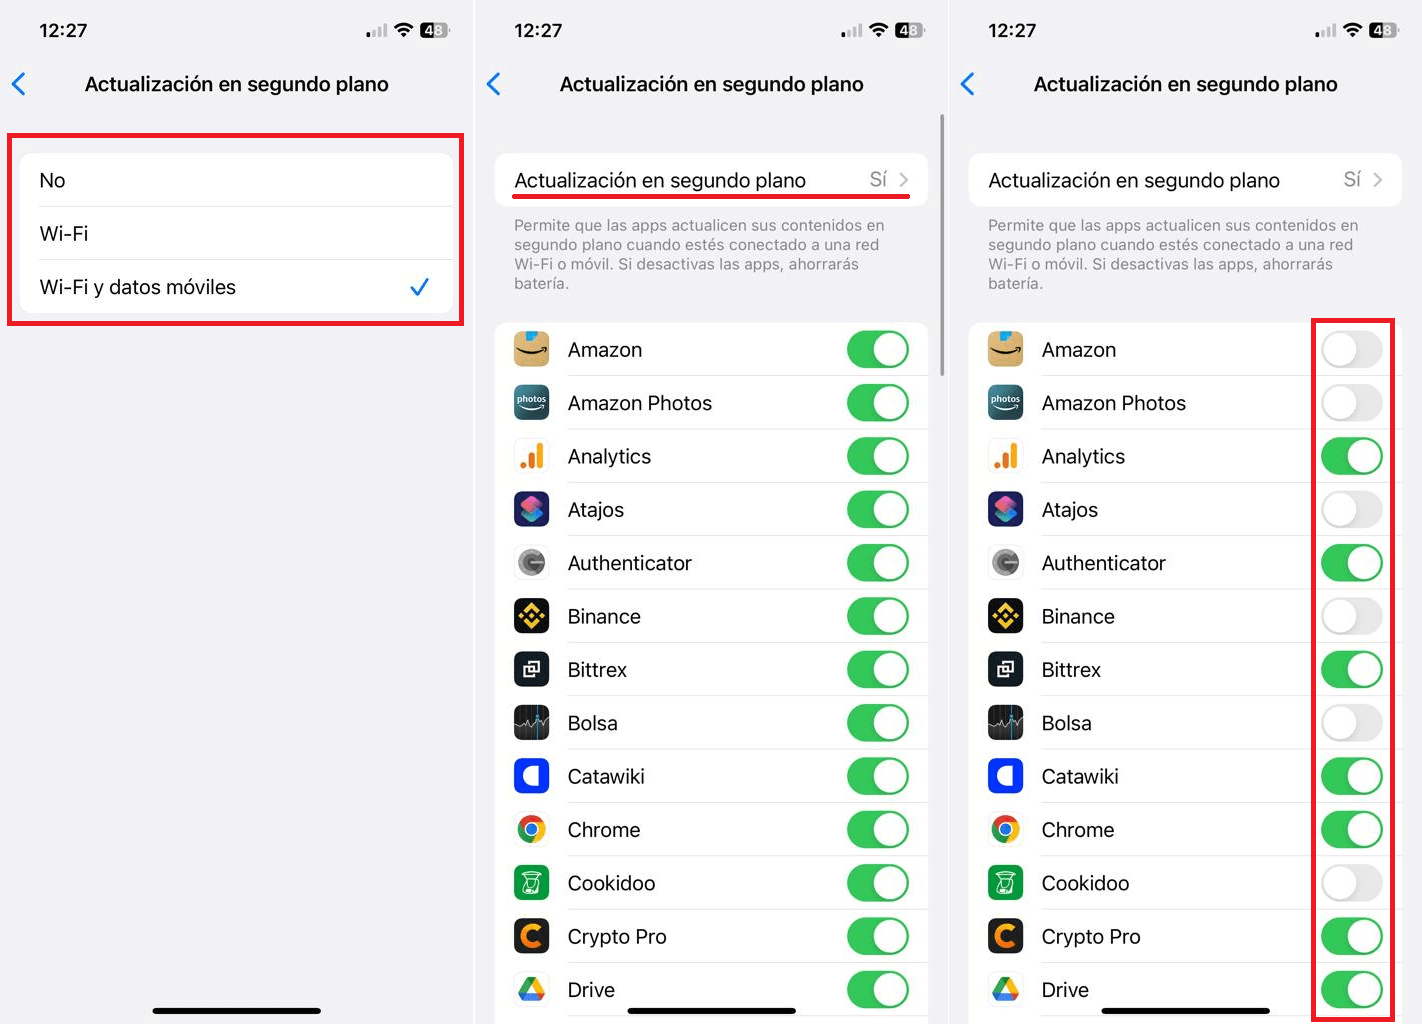 como desactivar o activar las actualizaciones de apps en segundo plano en iPhone con iOS